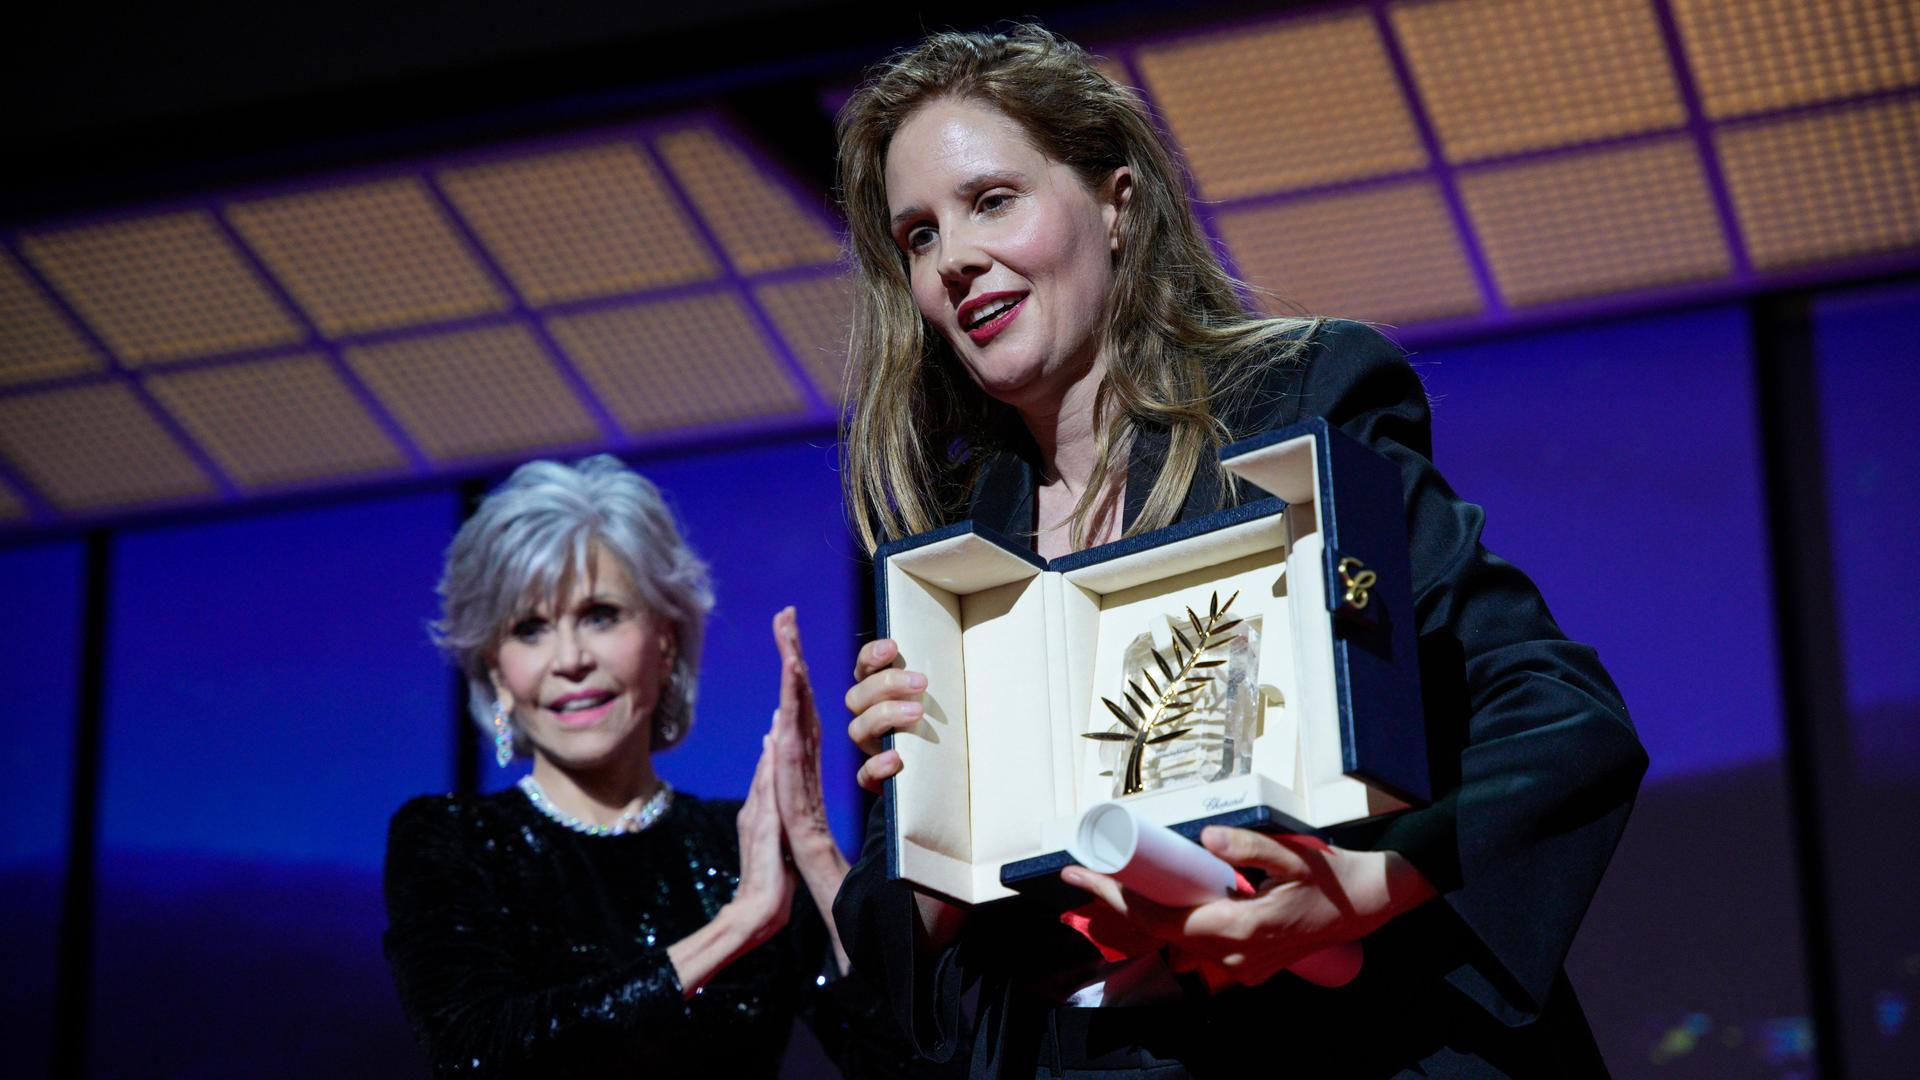 Justine Triet, rechts, nimmt die Goldene Palme für "Anatomie eines Falls" entgegen, die von Jane Fonda, links, während der Preisverleihung der 76. Internationalen Filmfestspiele in Cannes, Südfrankreich, überreicht wurde